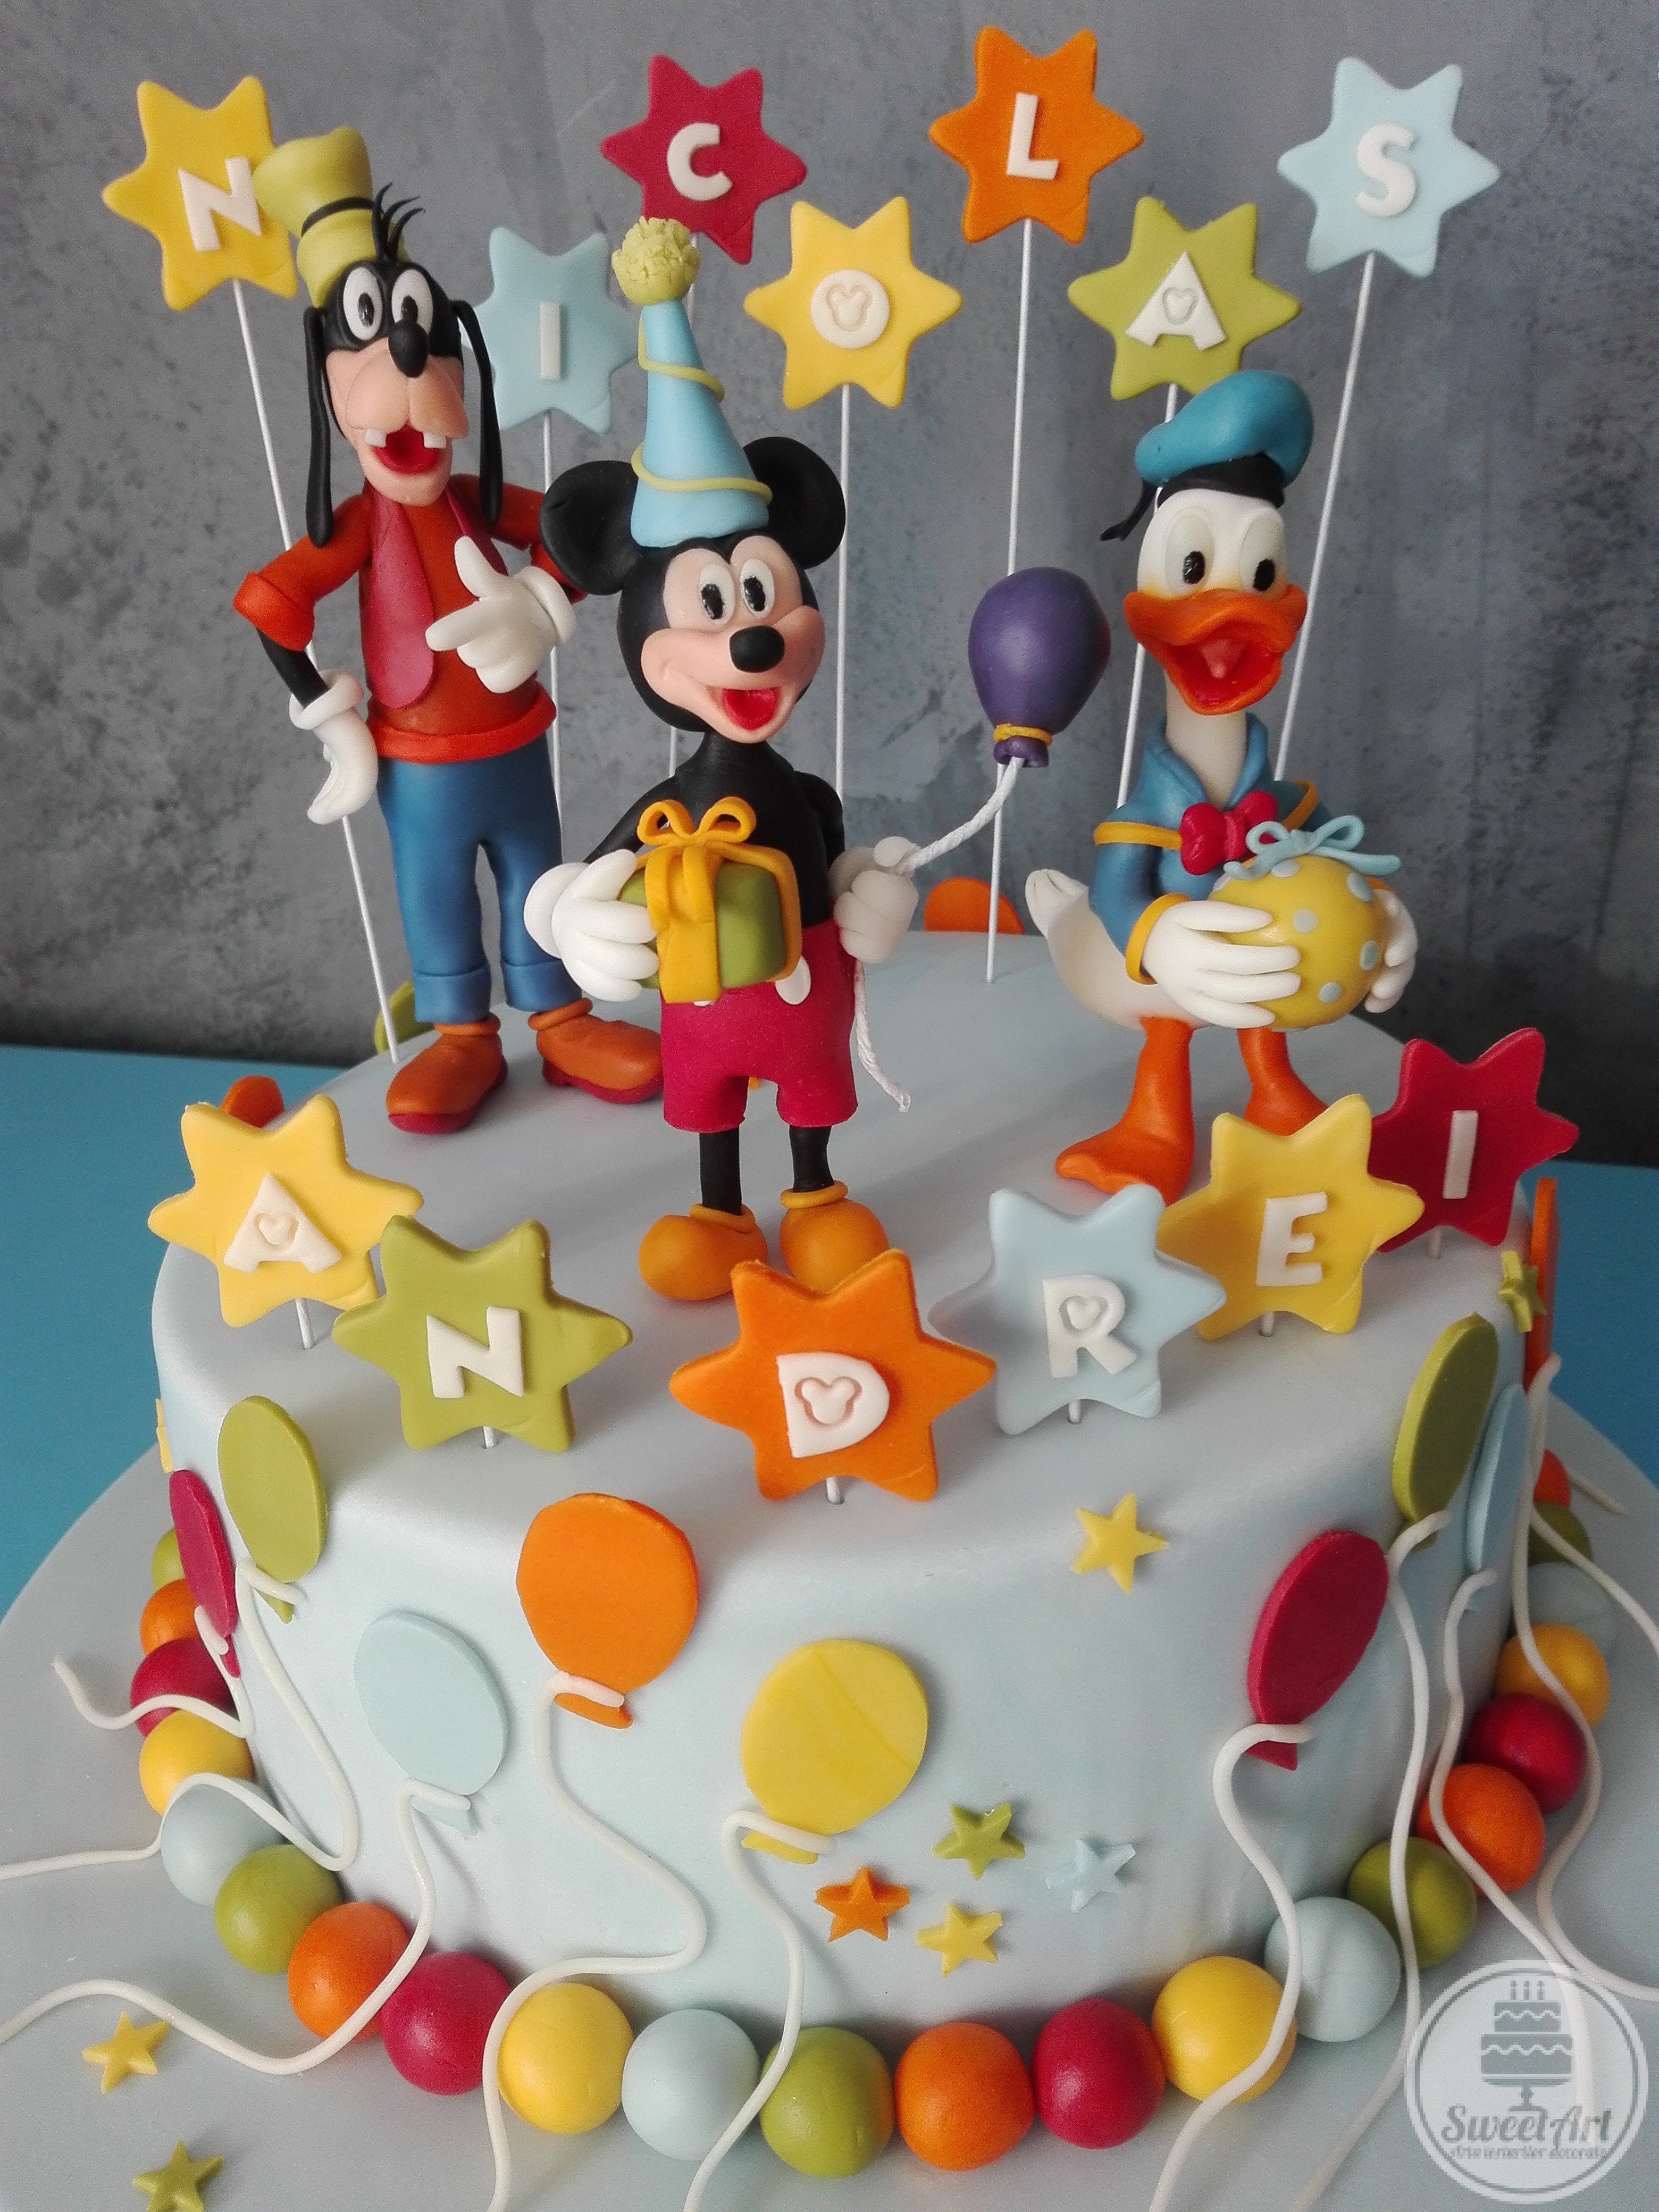 Tort cu Mickey și prietenii lui Goofy și Donald, stele, steluțe baloane și bile colorate